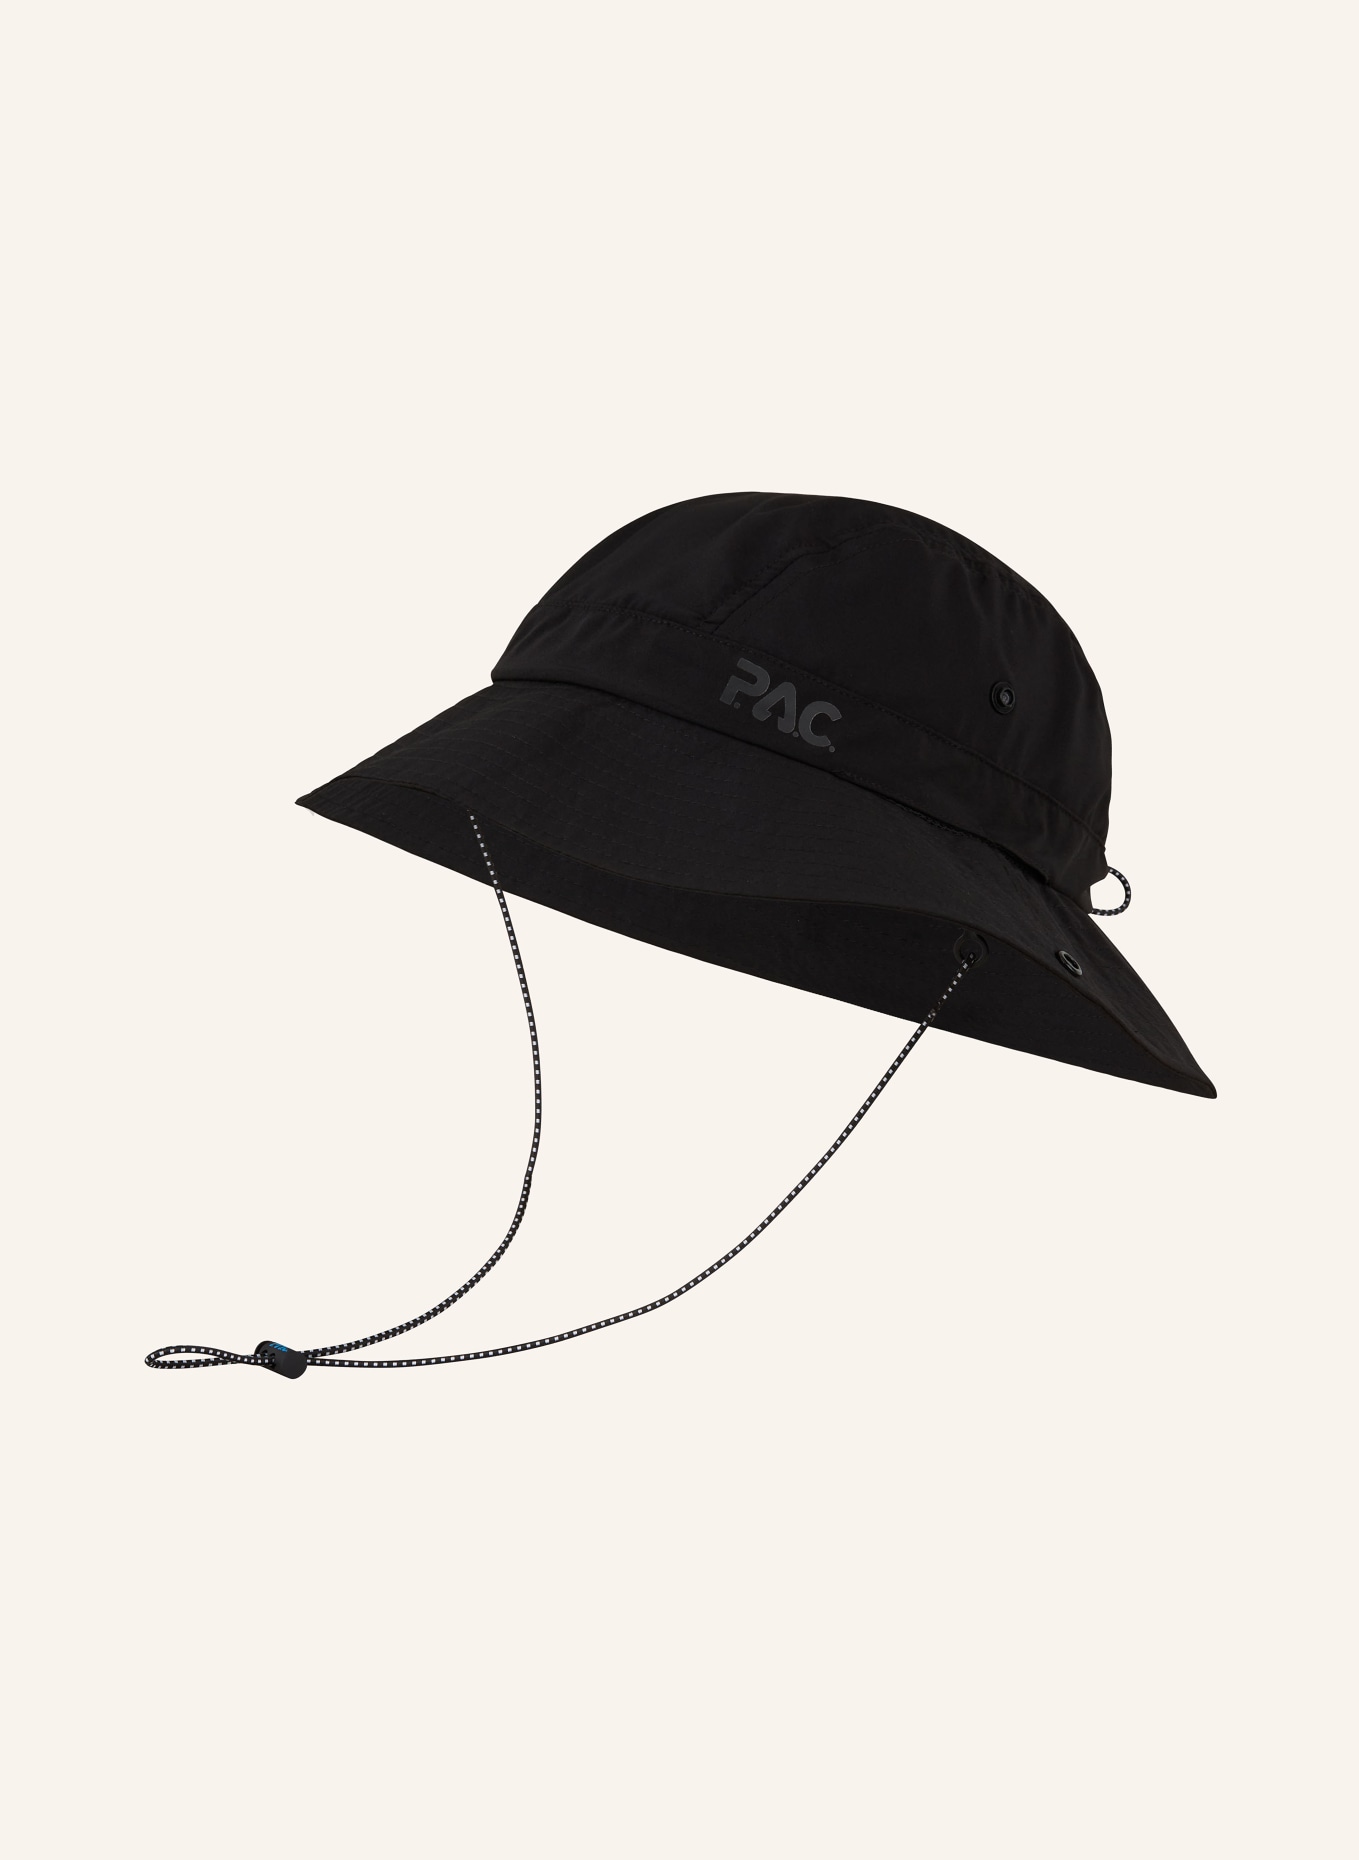 P.A.C. Bucket-Hat CLYDE, Farbe: SCHWARZ (Bild 1)